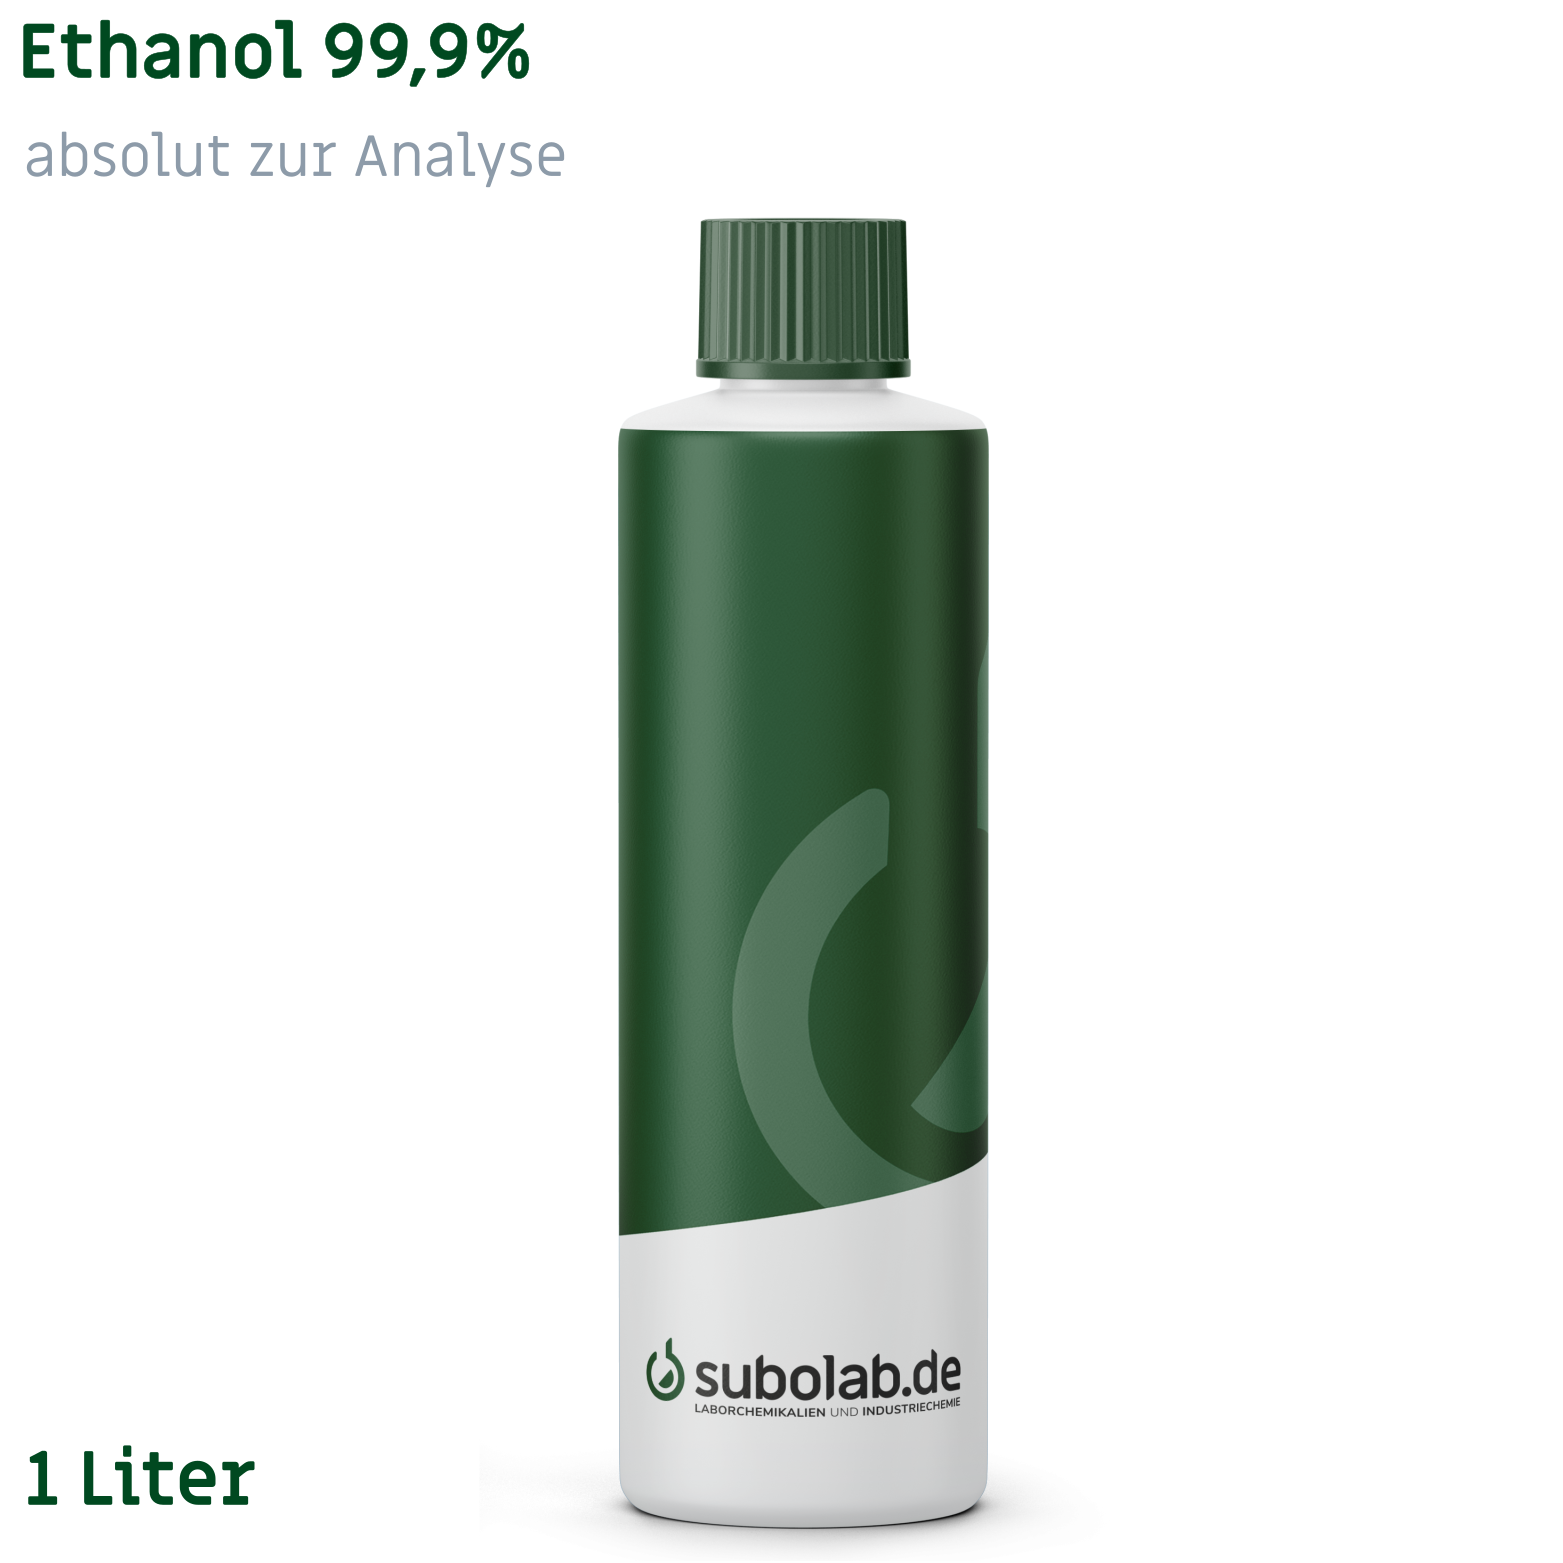 Bild von Ethanol 99,9% absolut zur Analyse (1 Liter)